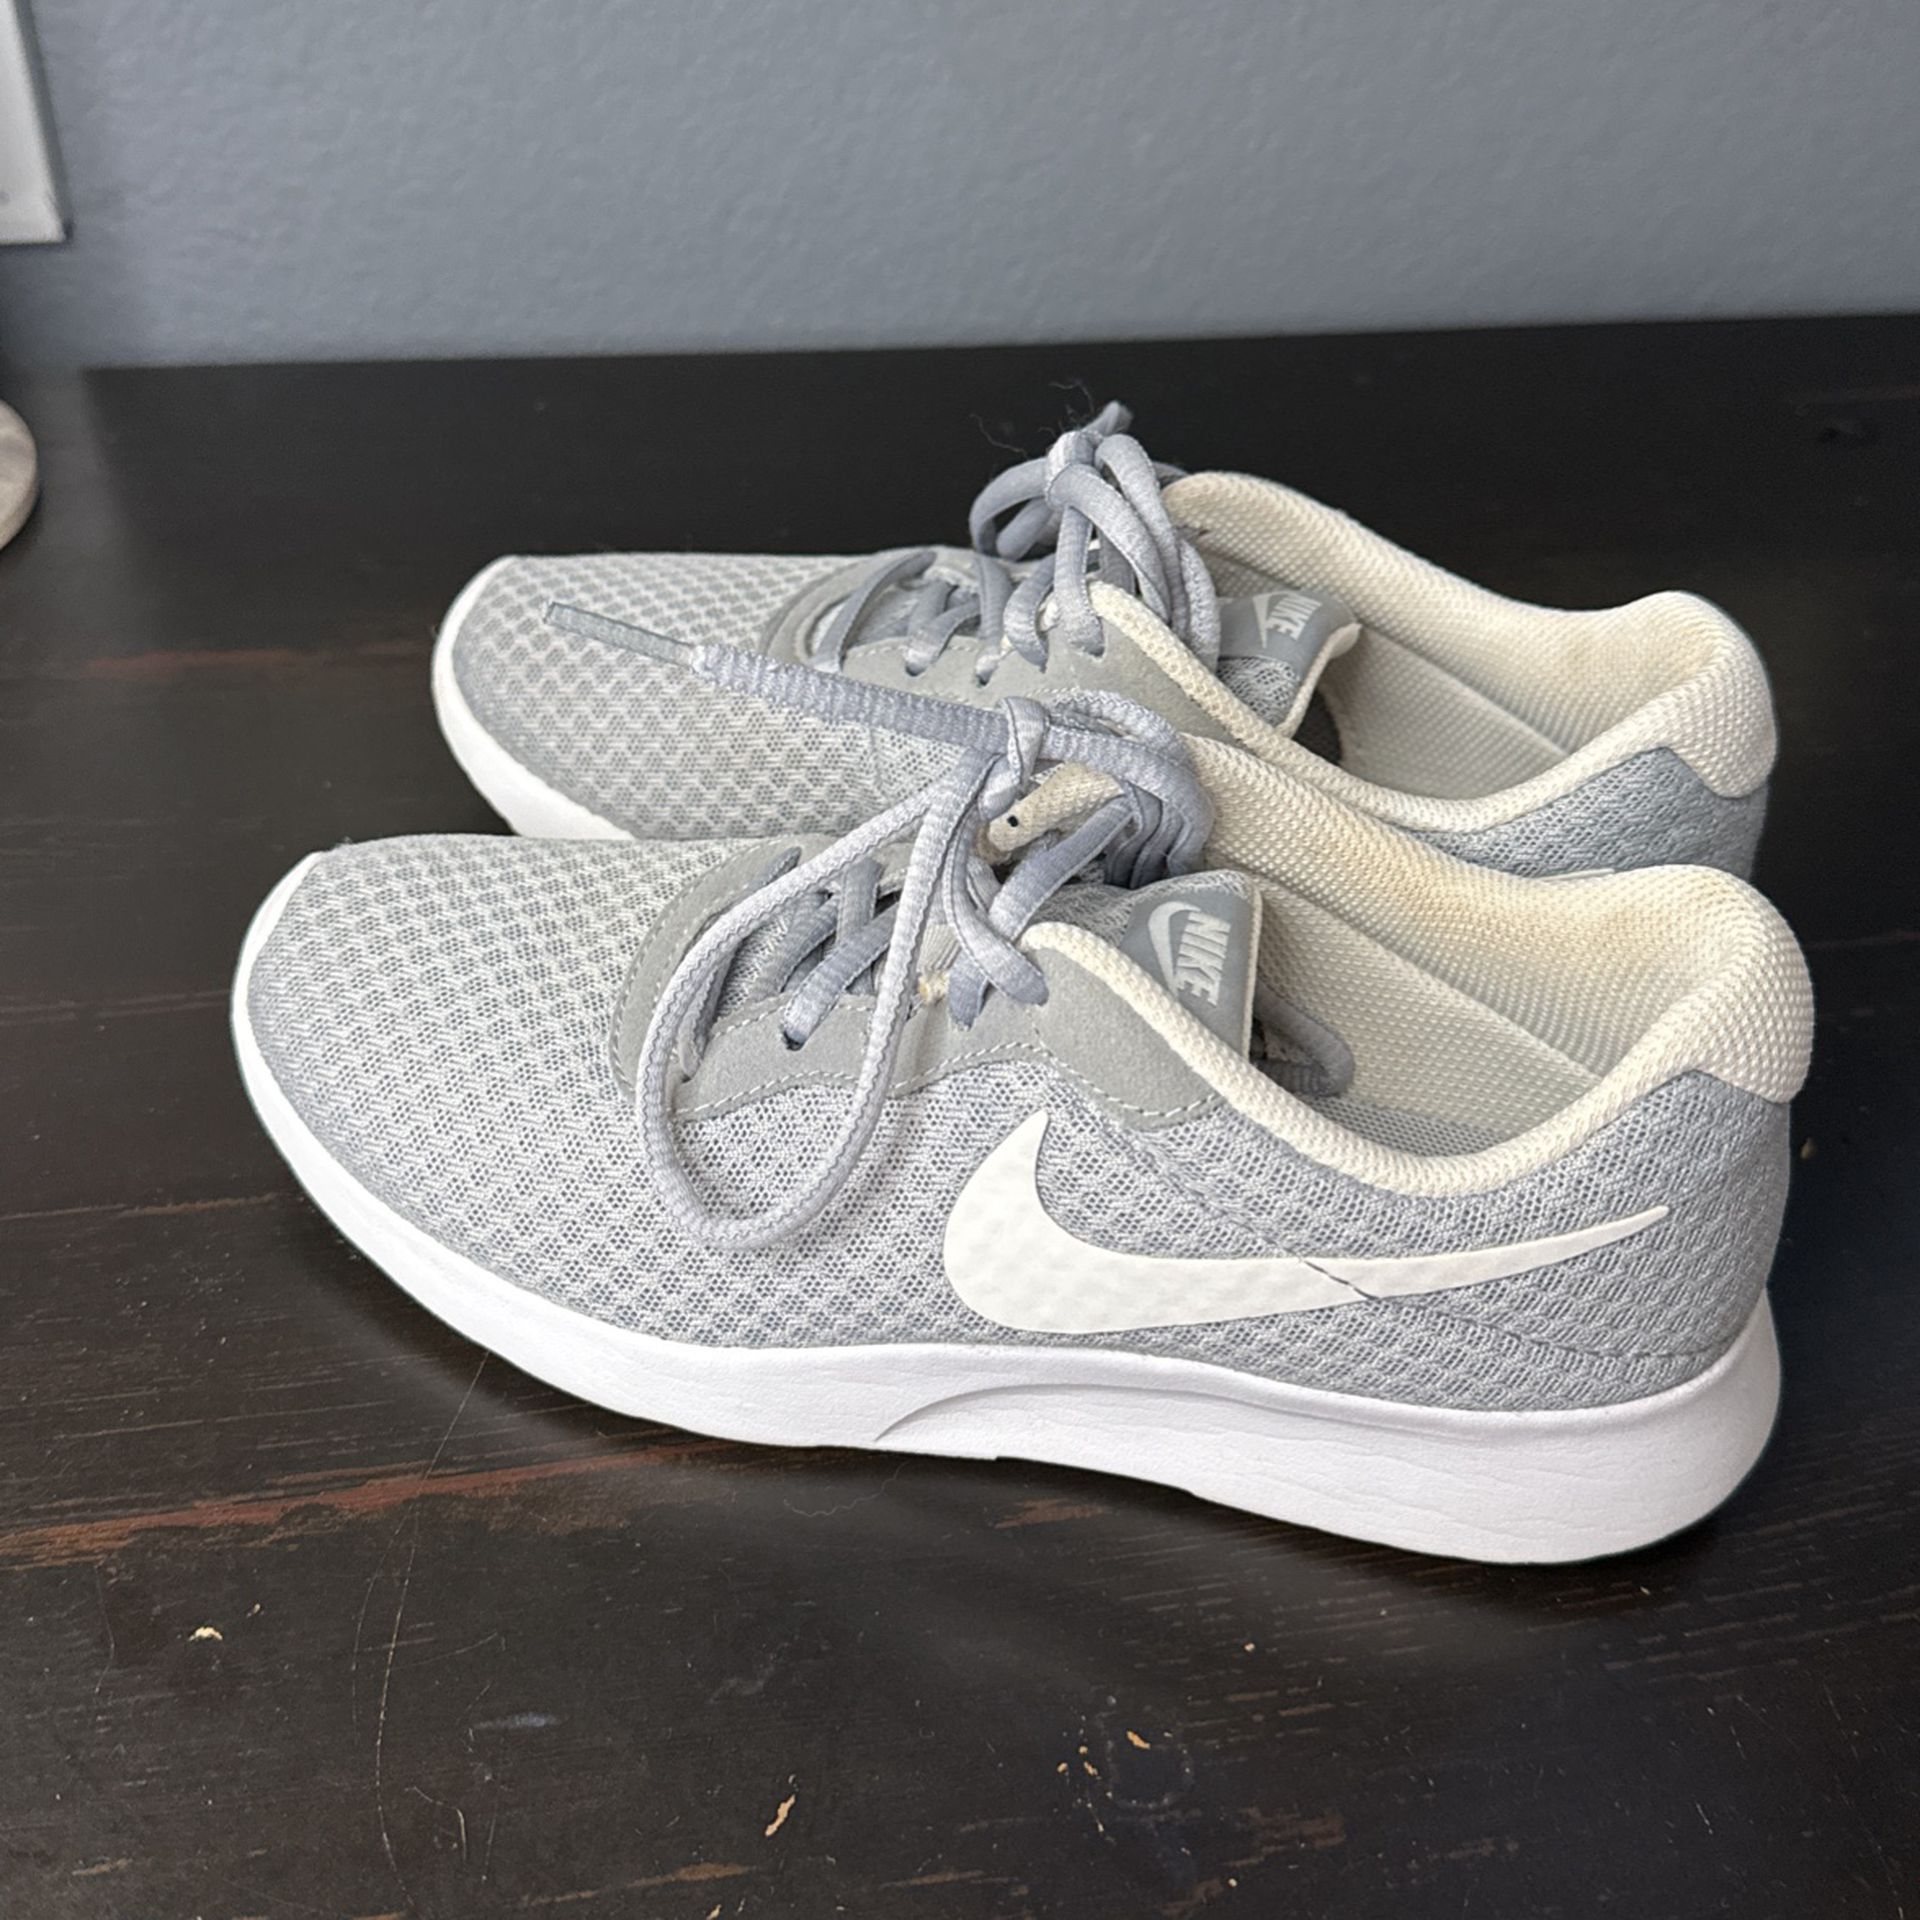 Nike Women’s Running Shoes - Size 6